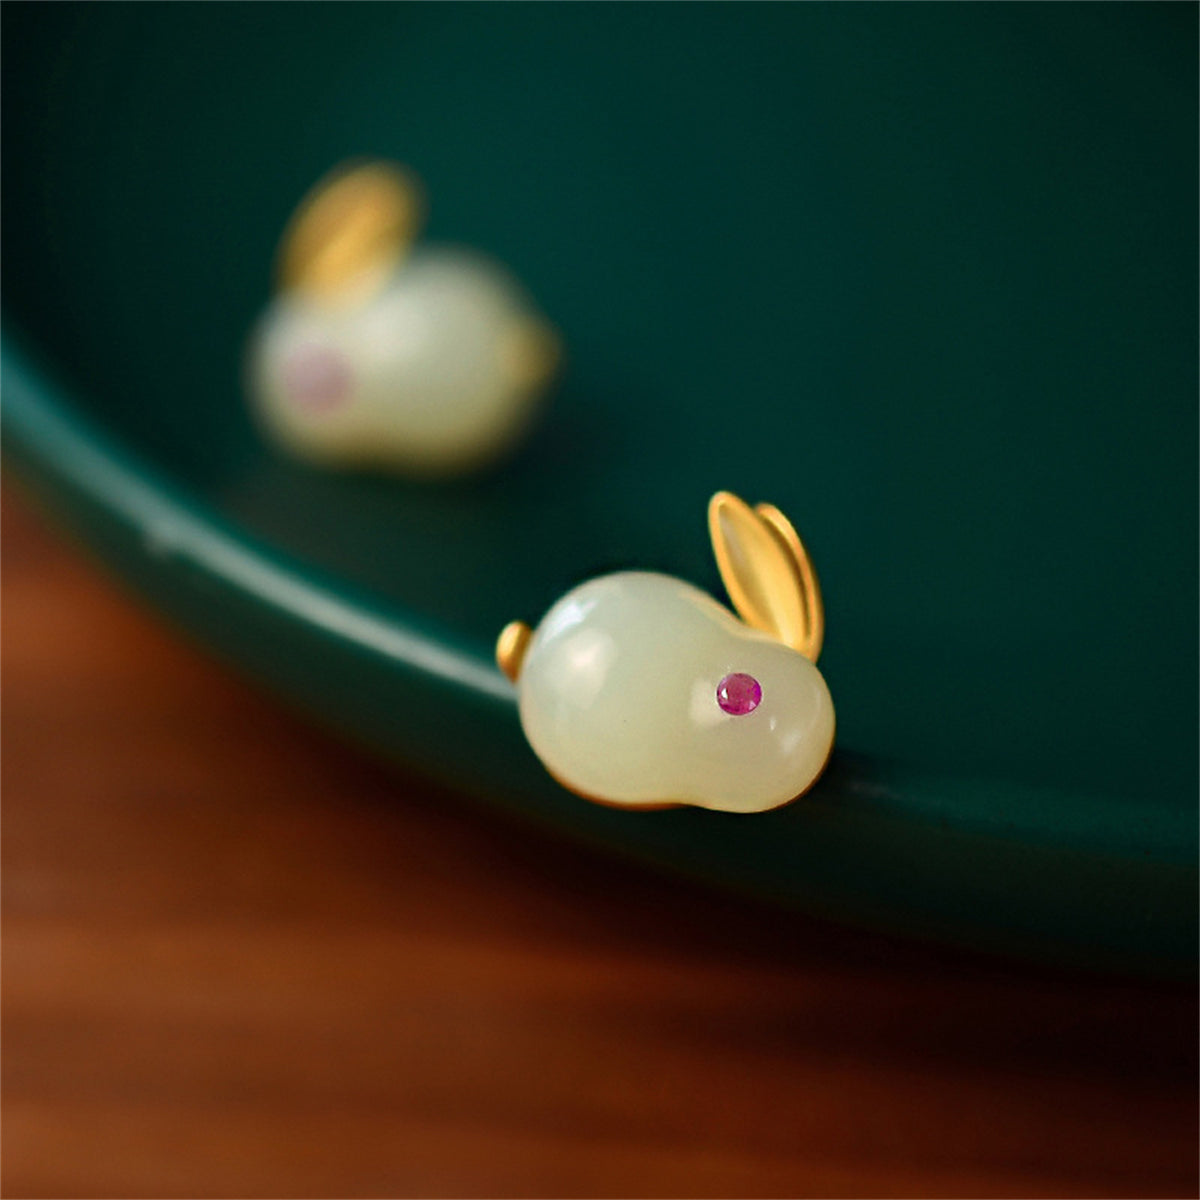 Quartz & 18K Gold-Plated Rabbit Stud Earrings